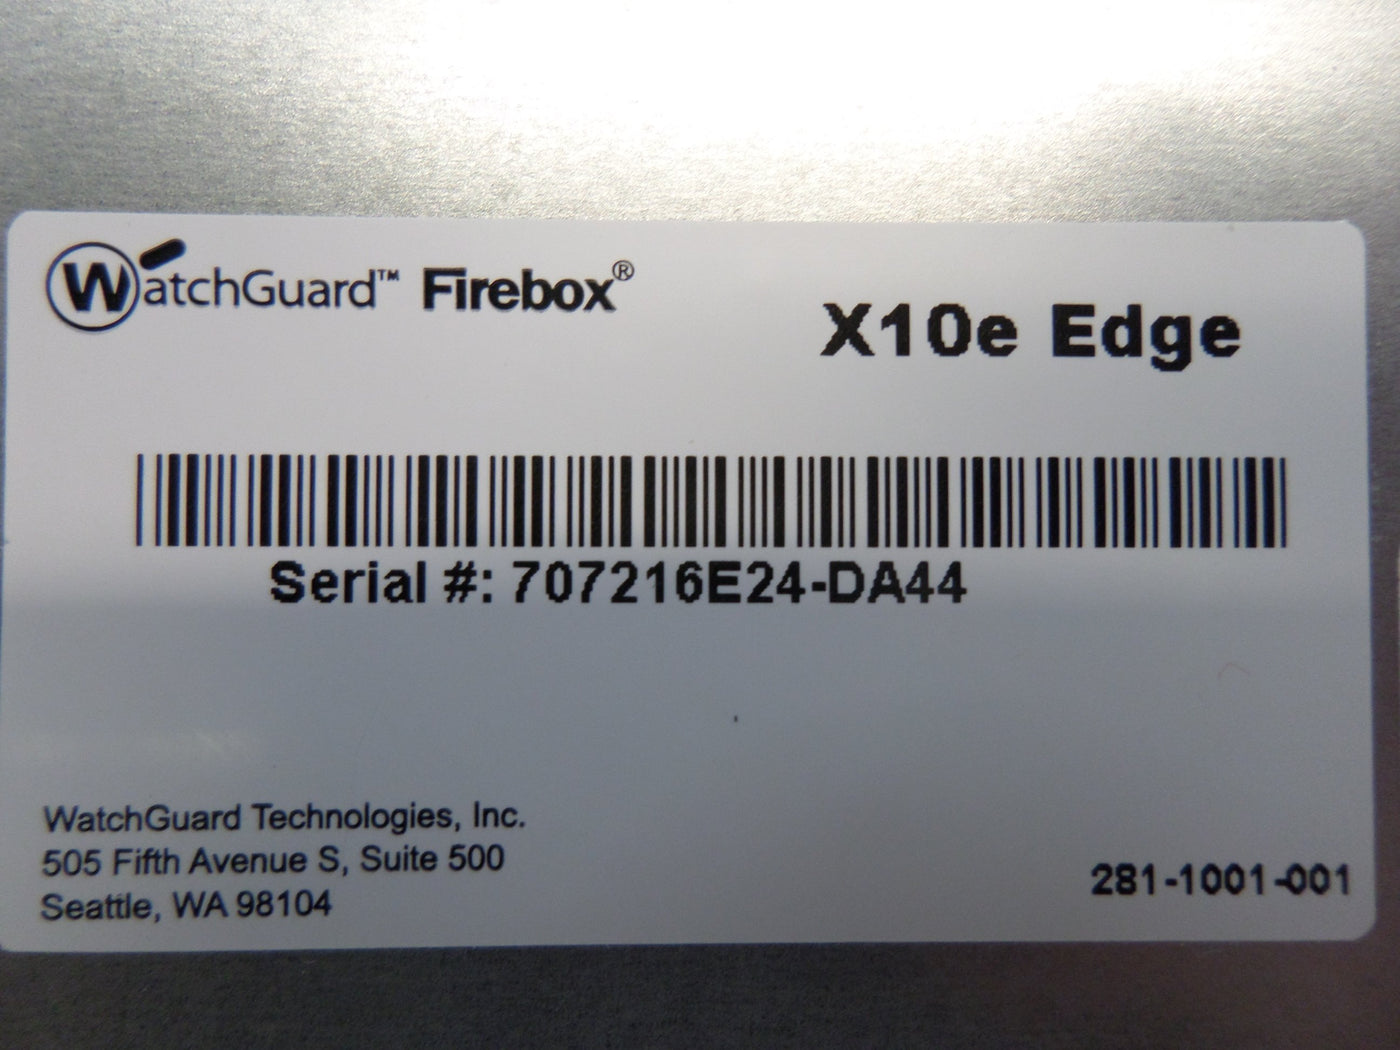 PR26315_X10e_WatchGuard XP2E6 Firebox X10e Edge - Image7